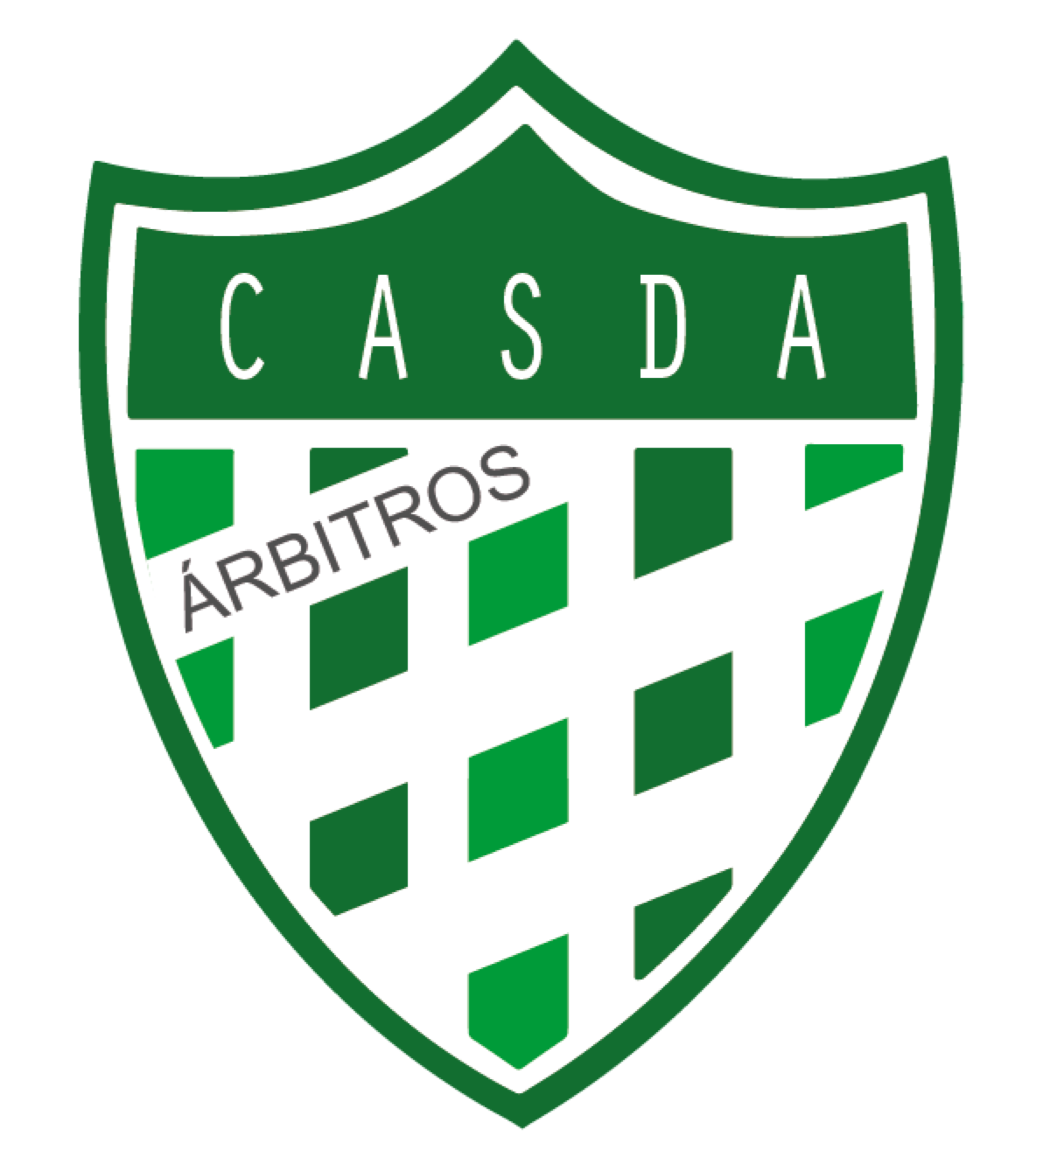 CASDA - Árbitros